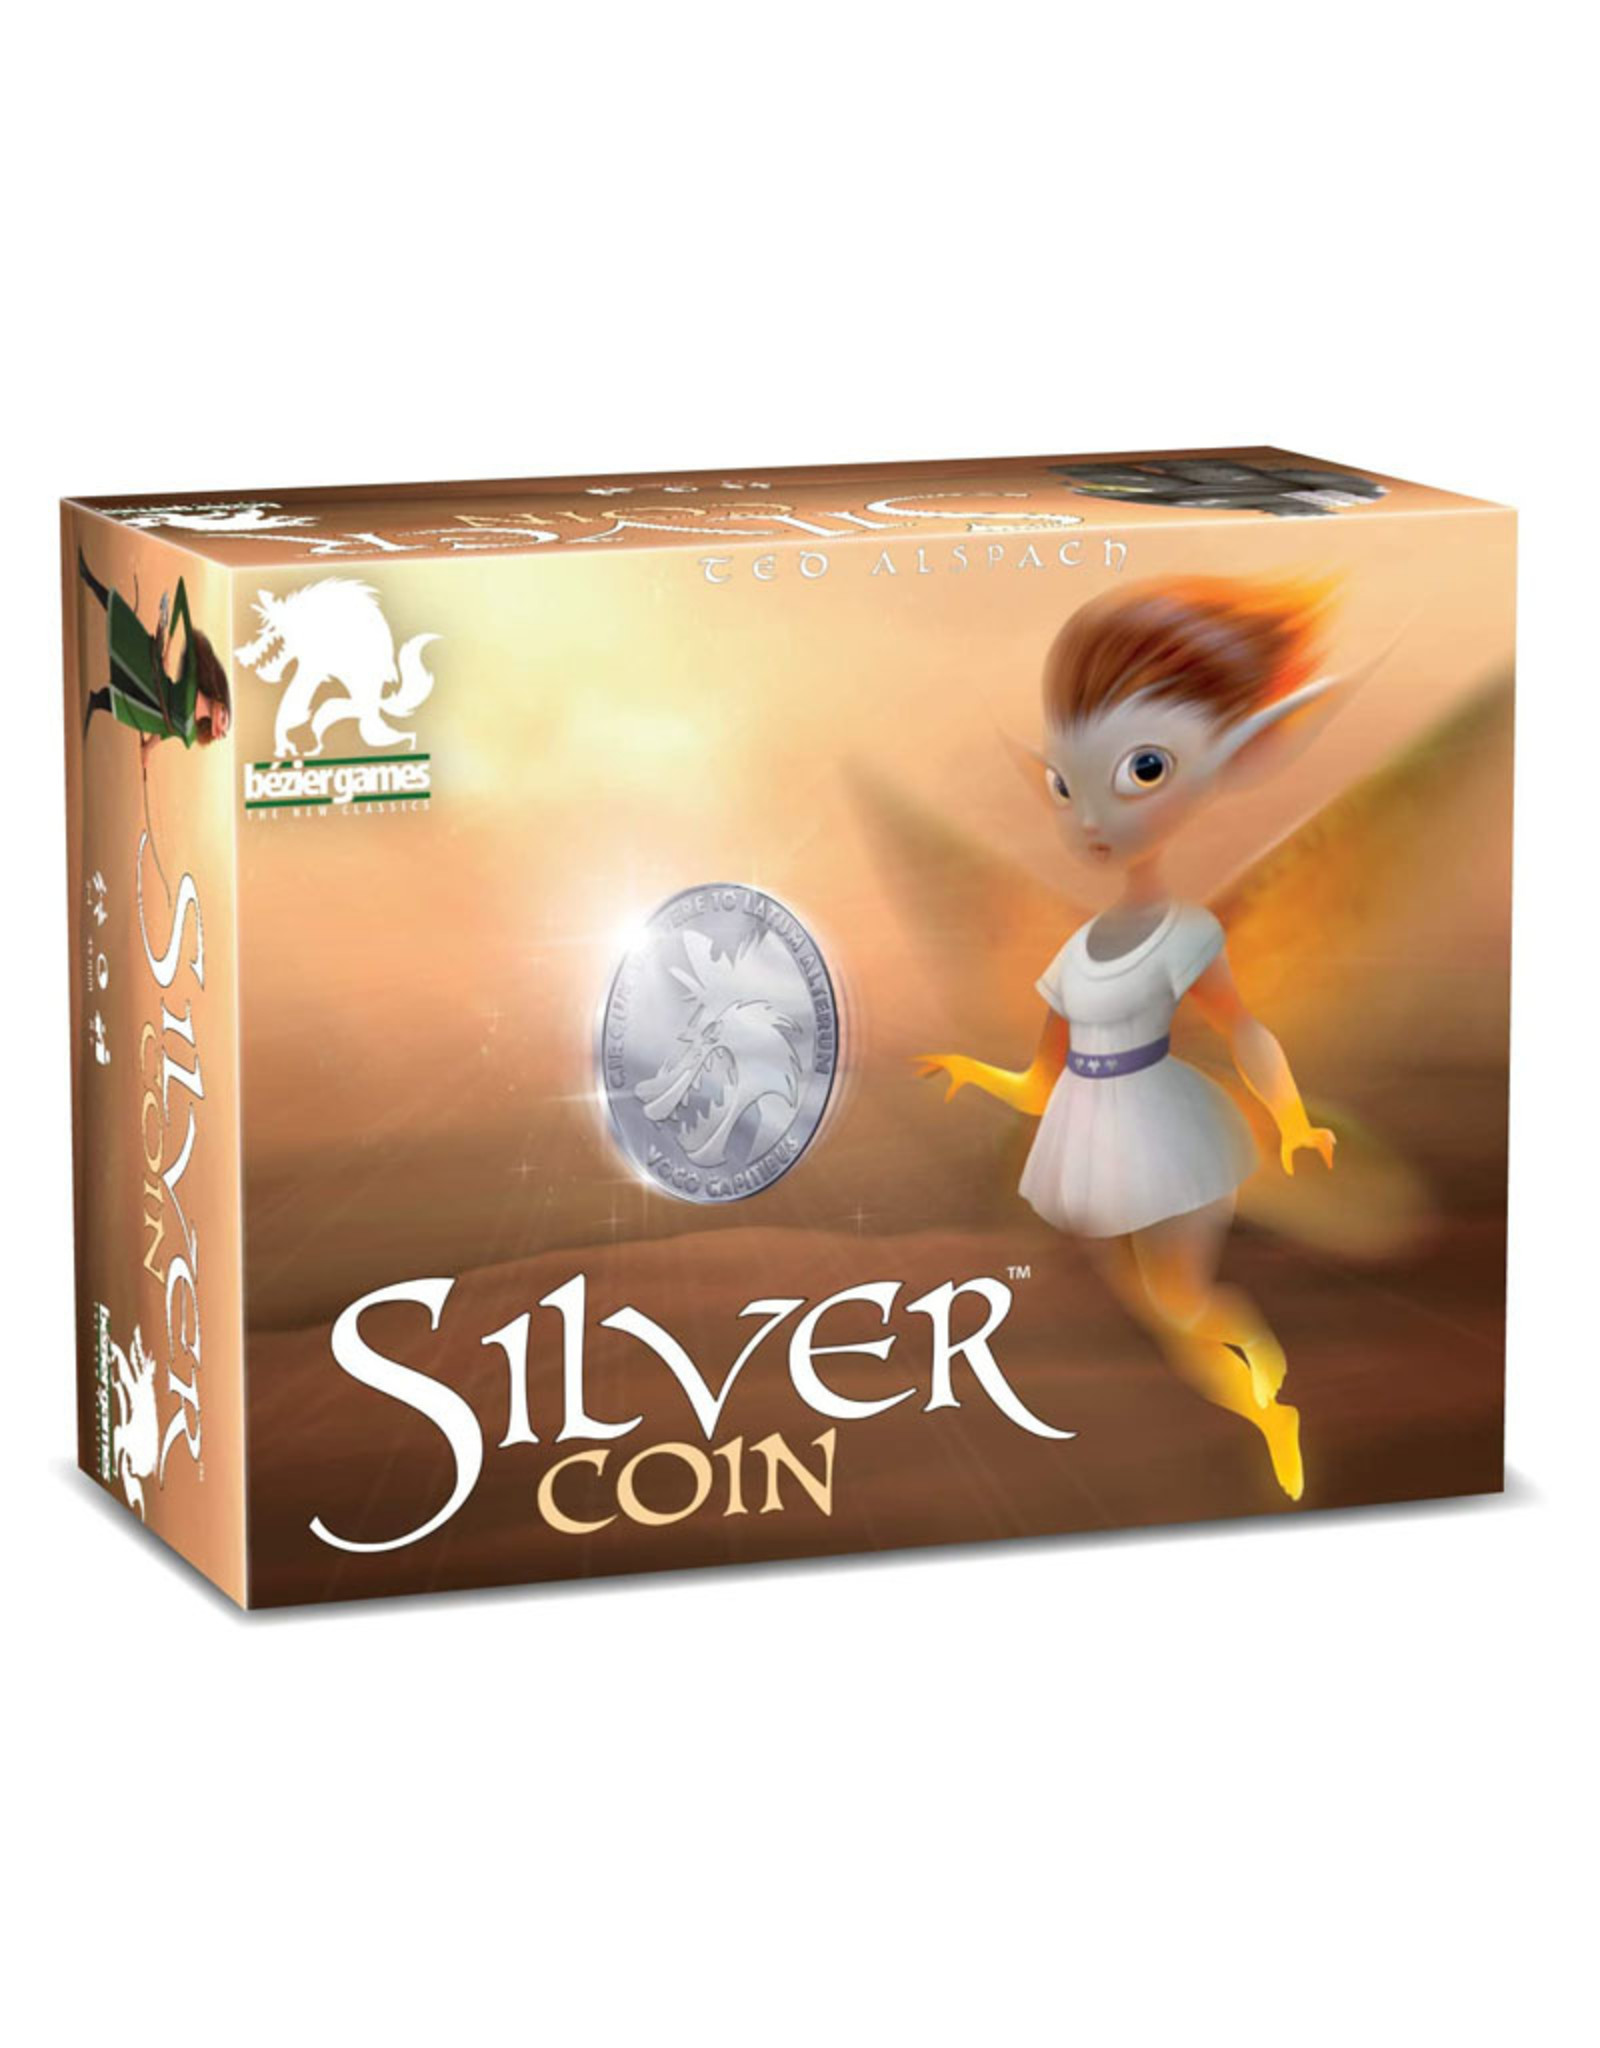 Bezier Silver Coin